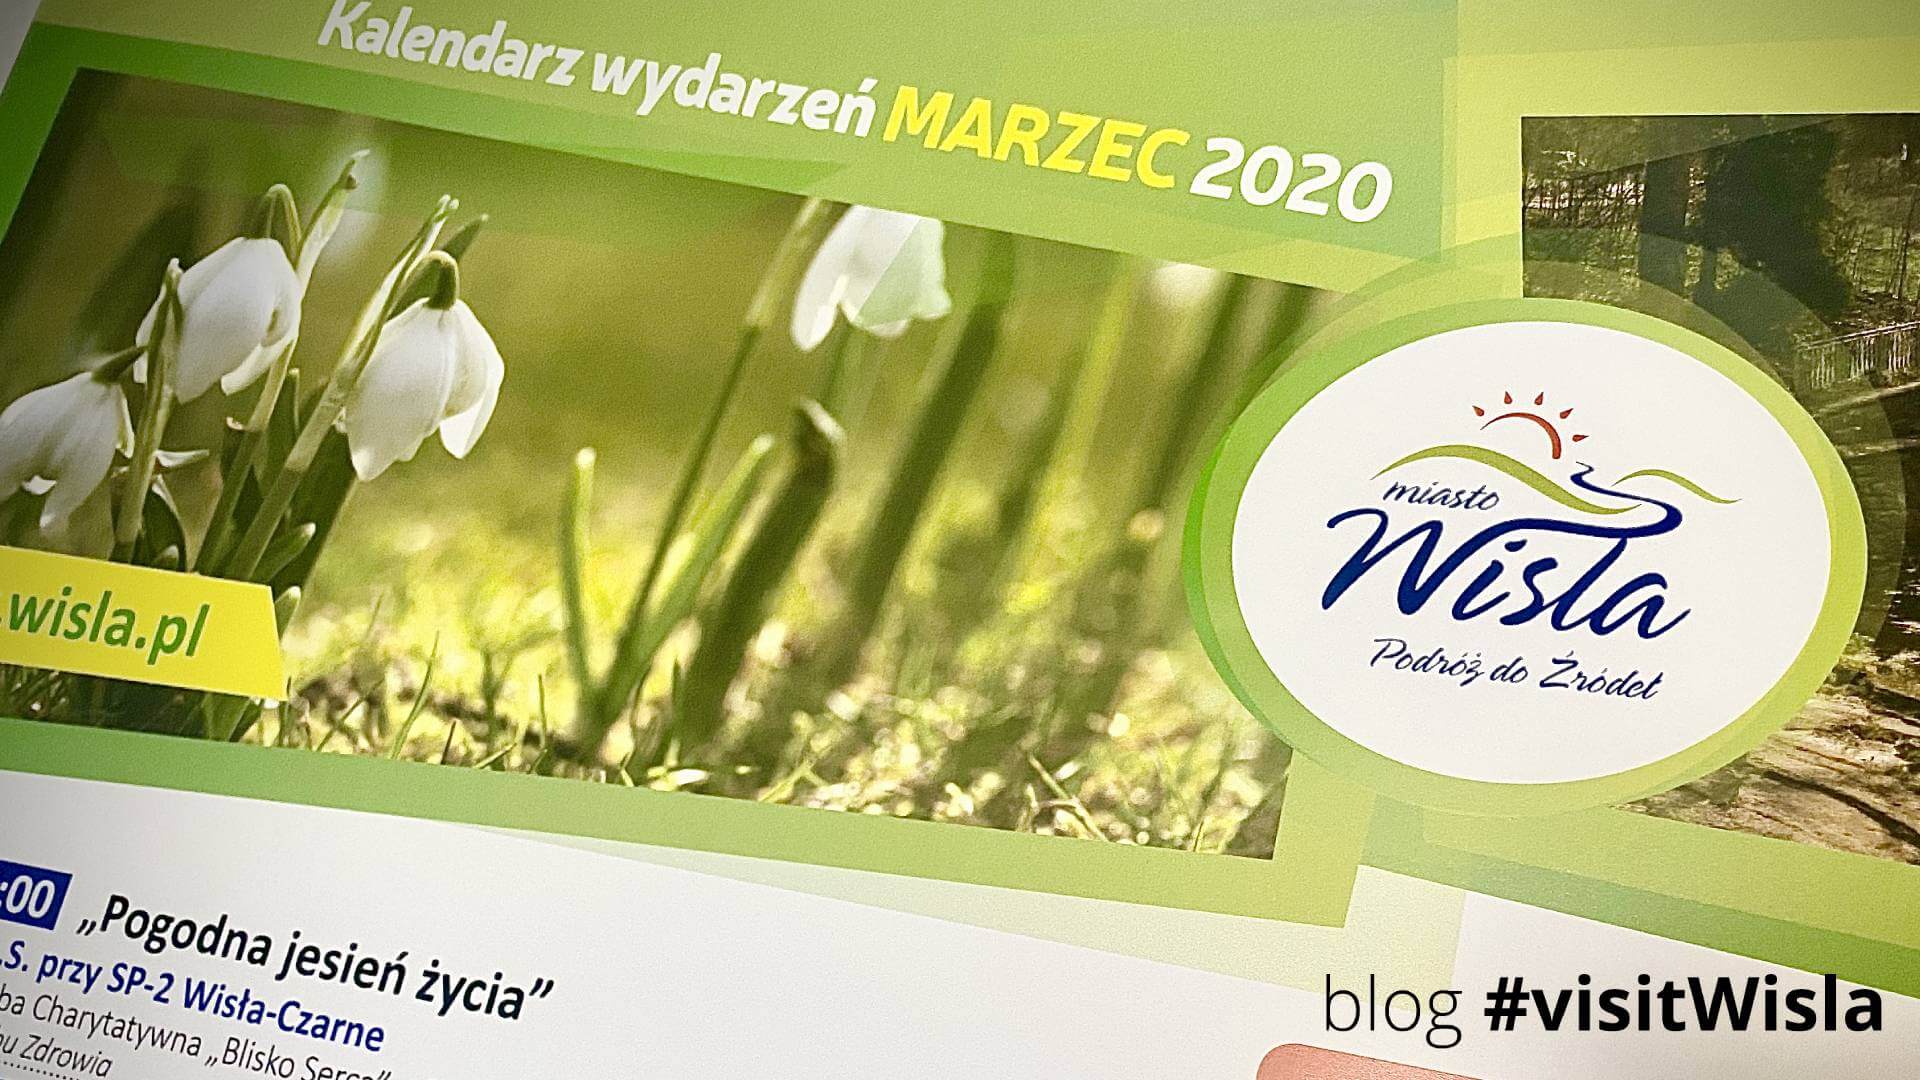 Plakat promujący wydarzenia w Wiśle - marzec 2020